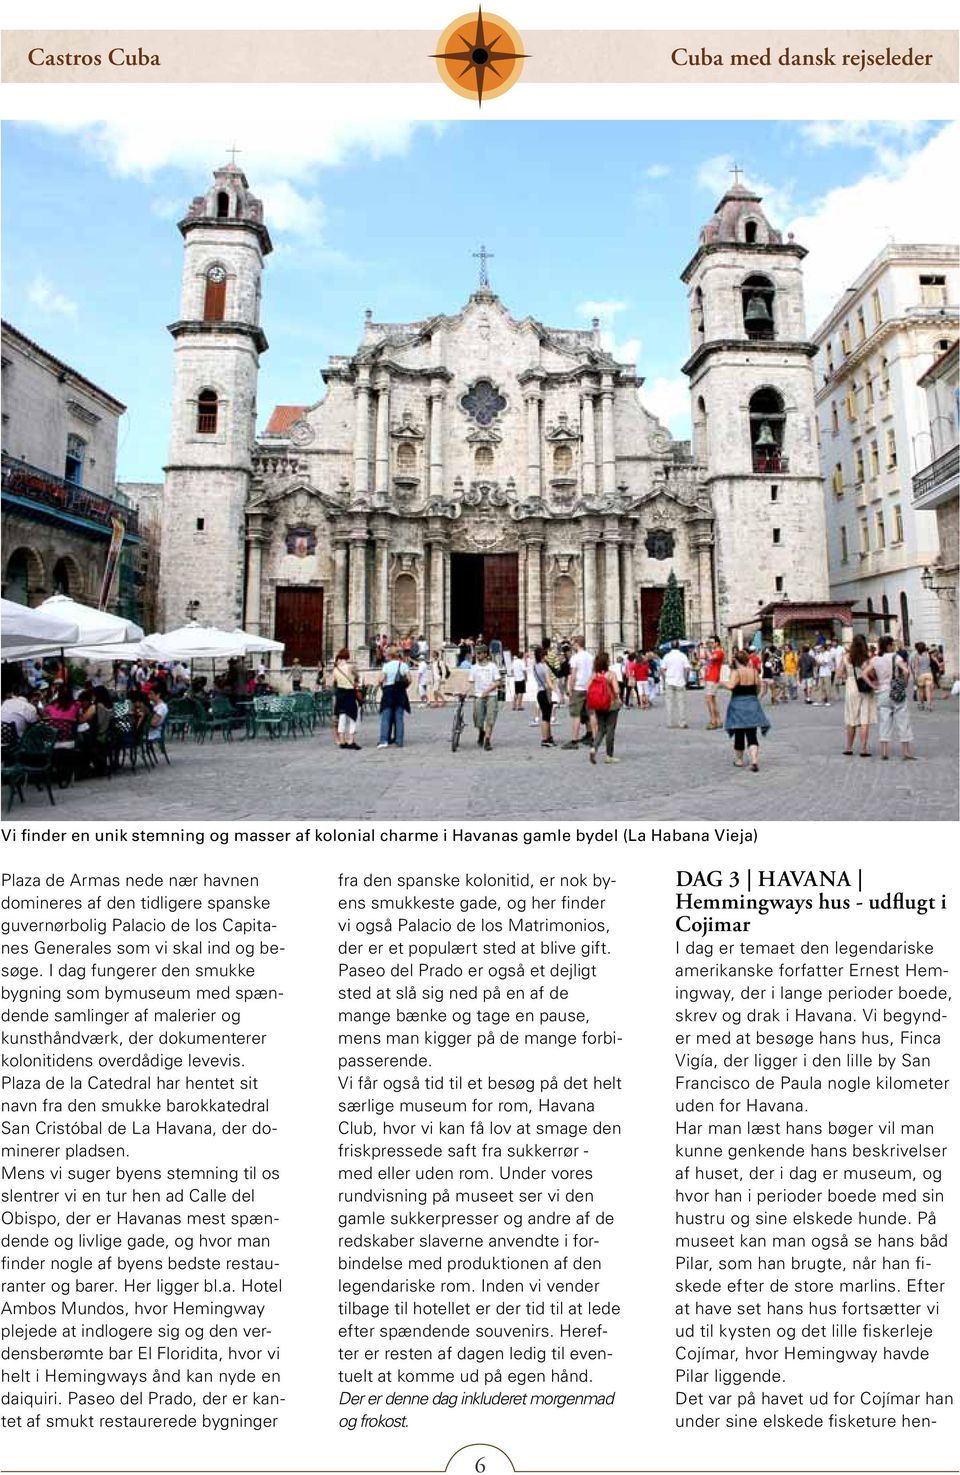 Plaza de la Catedral har hentet sit navn fra den smukke barokkatedral San Cristóbal de La Havana, der dominerer pladsen.